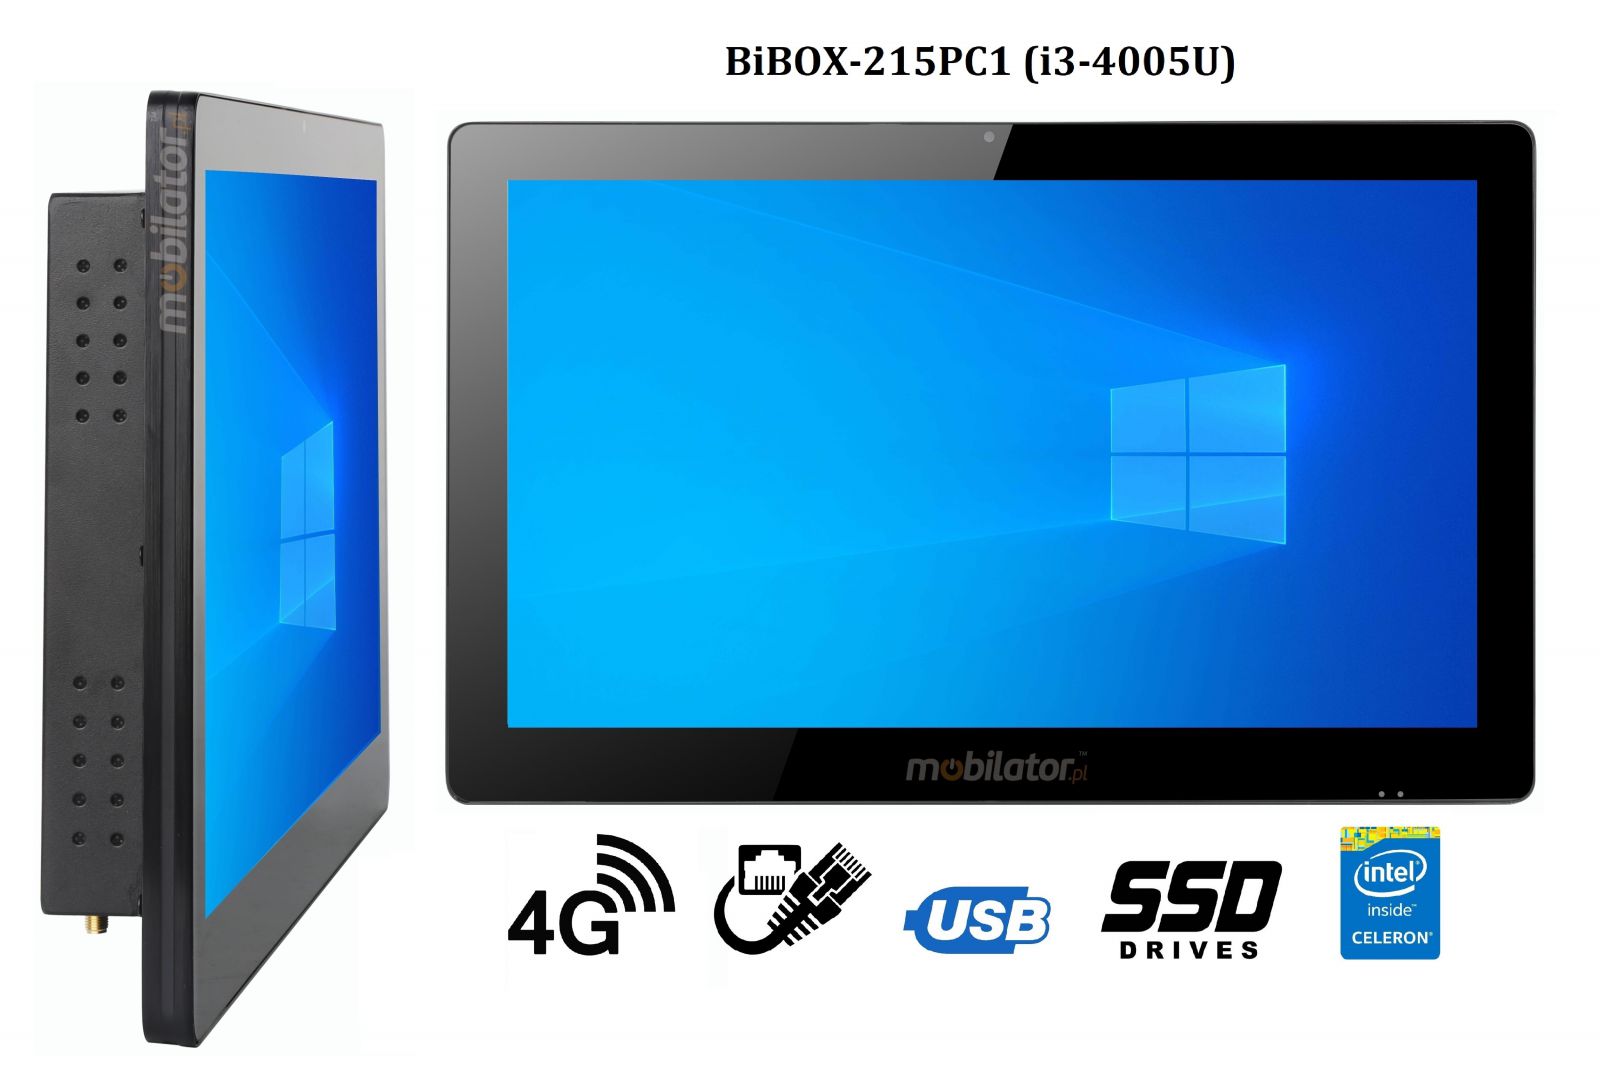 BiBOX-215PC1 (i3-4005U)v.5 - Wzmocniony panel komputerowy z IP65 (odporno woda i py) z dyskiem SSD 256 GB, technologi 4G oraz WiFi